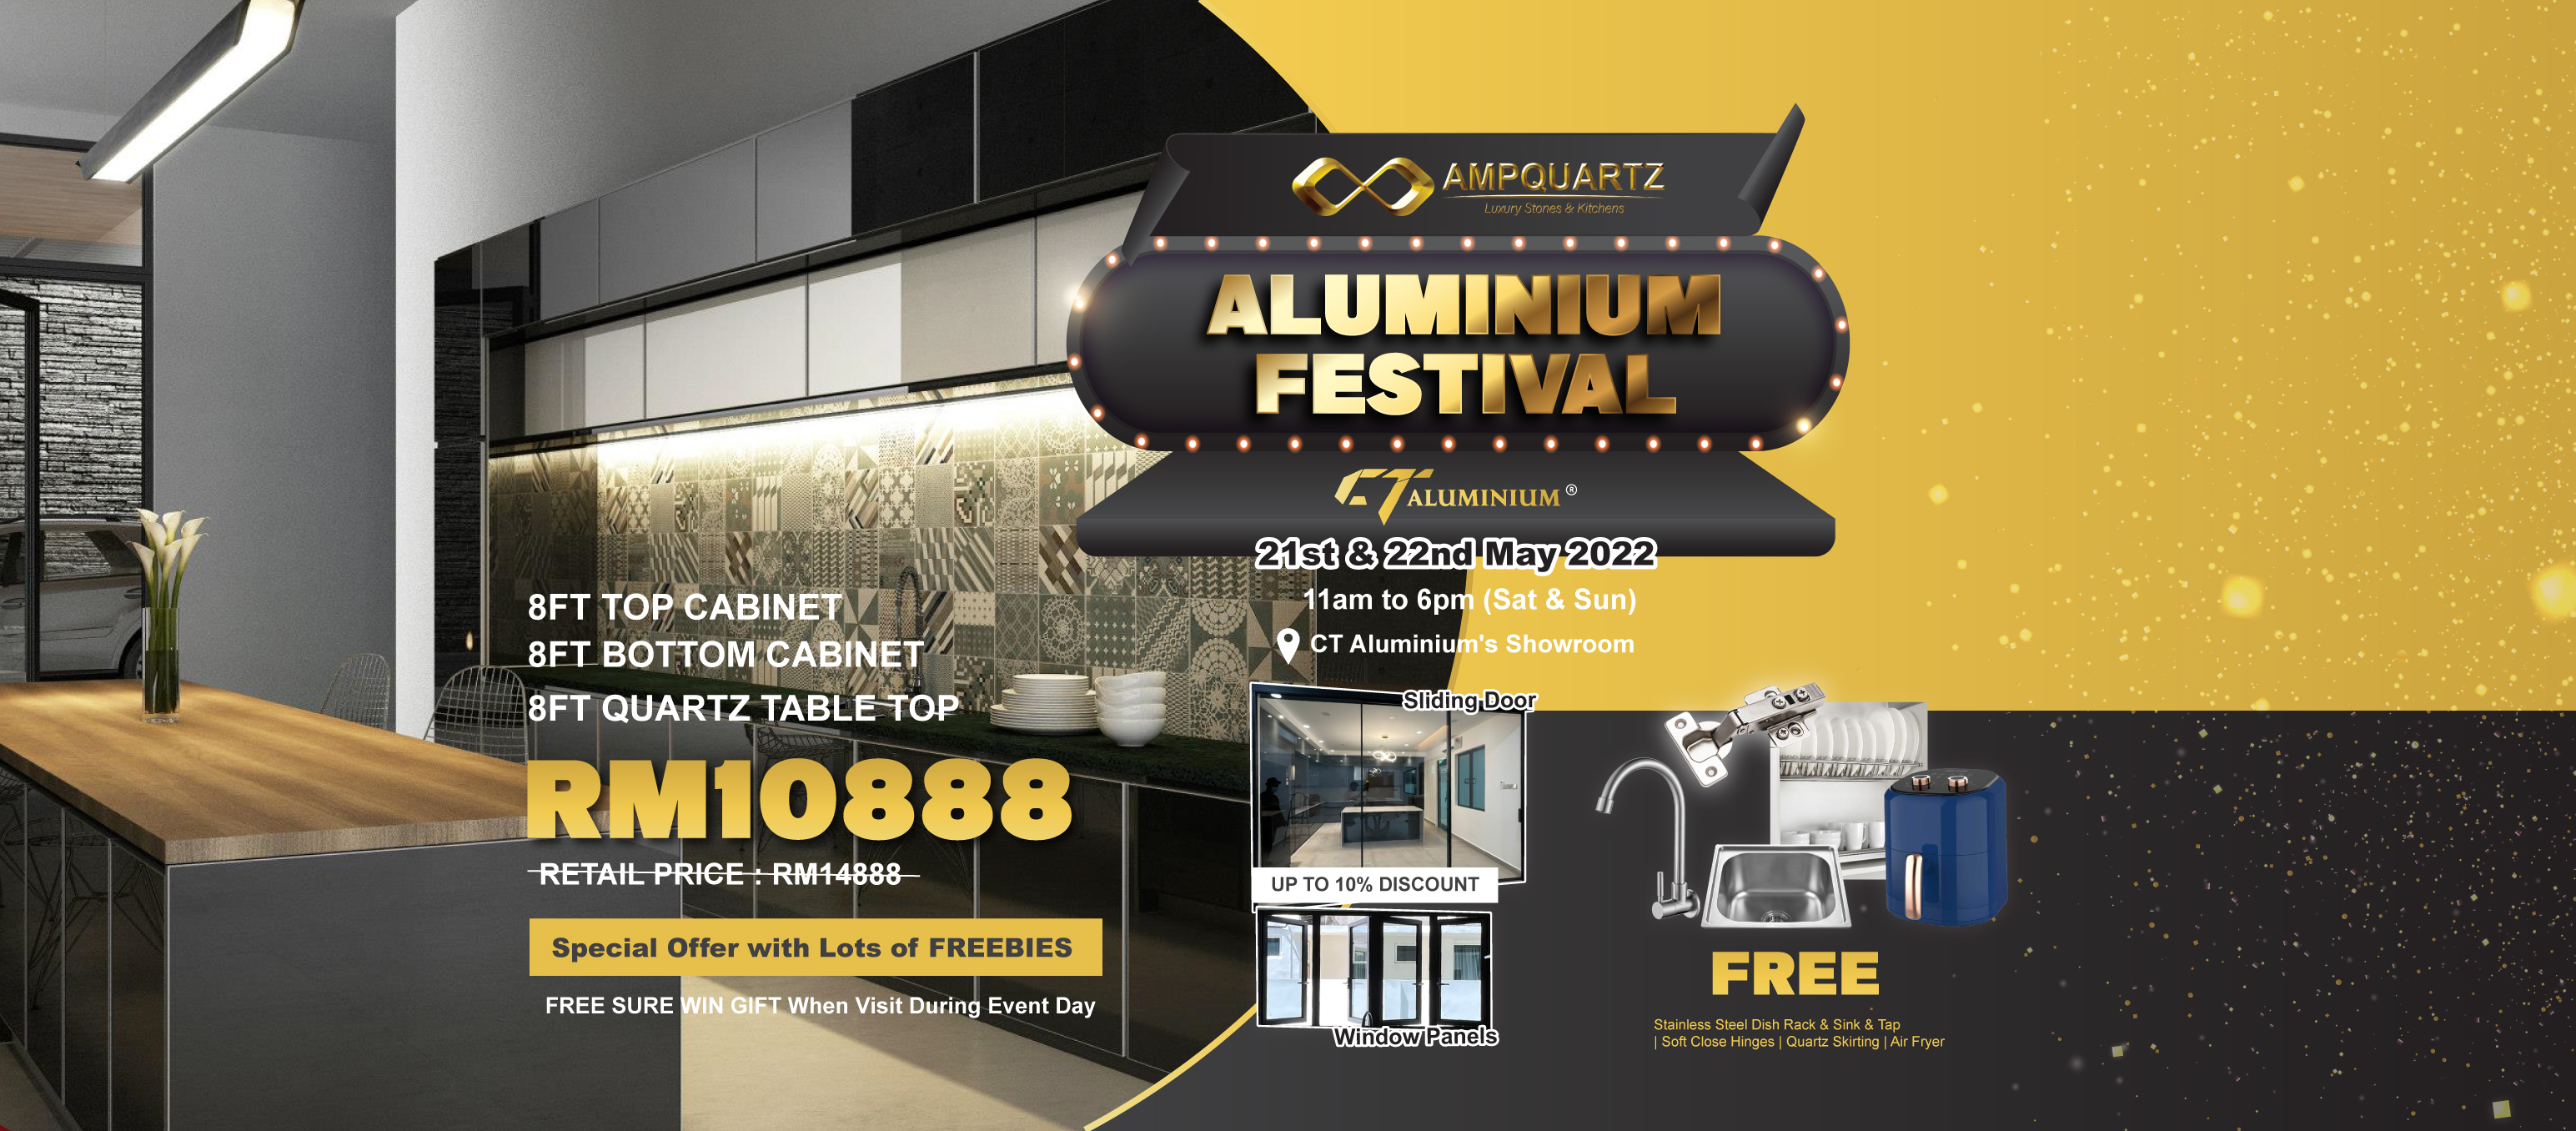  EXCLUSIVE PROMOTION: AmpQuartz Aluminium Festival(AAF) 2022